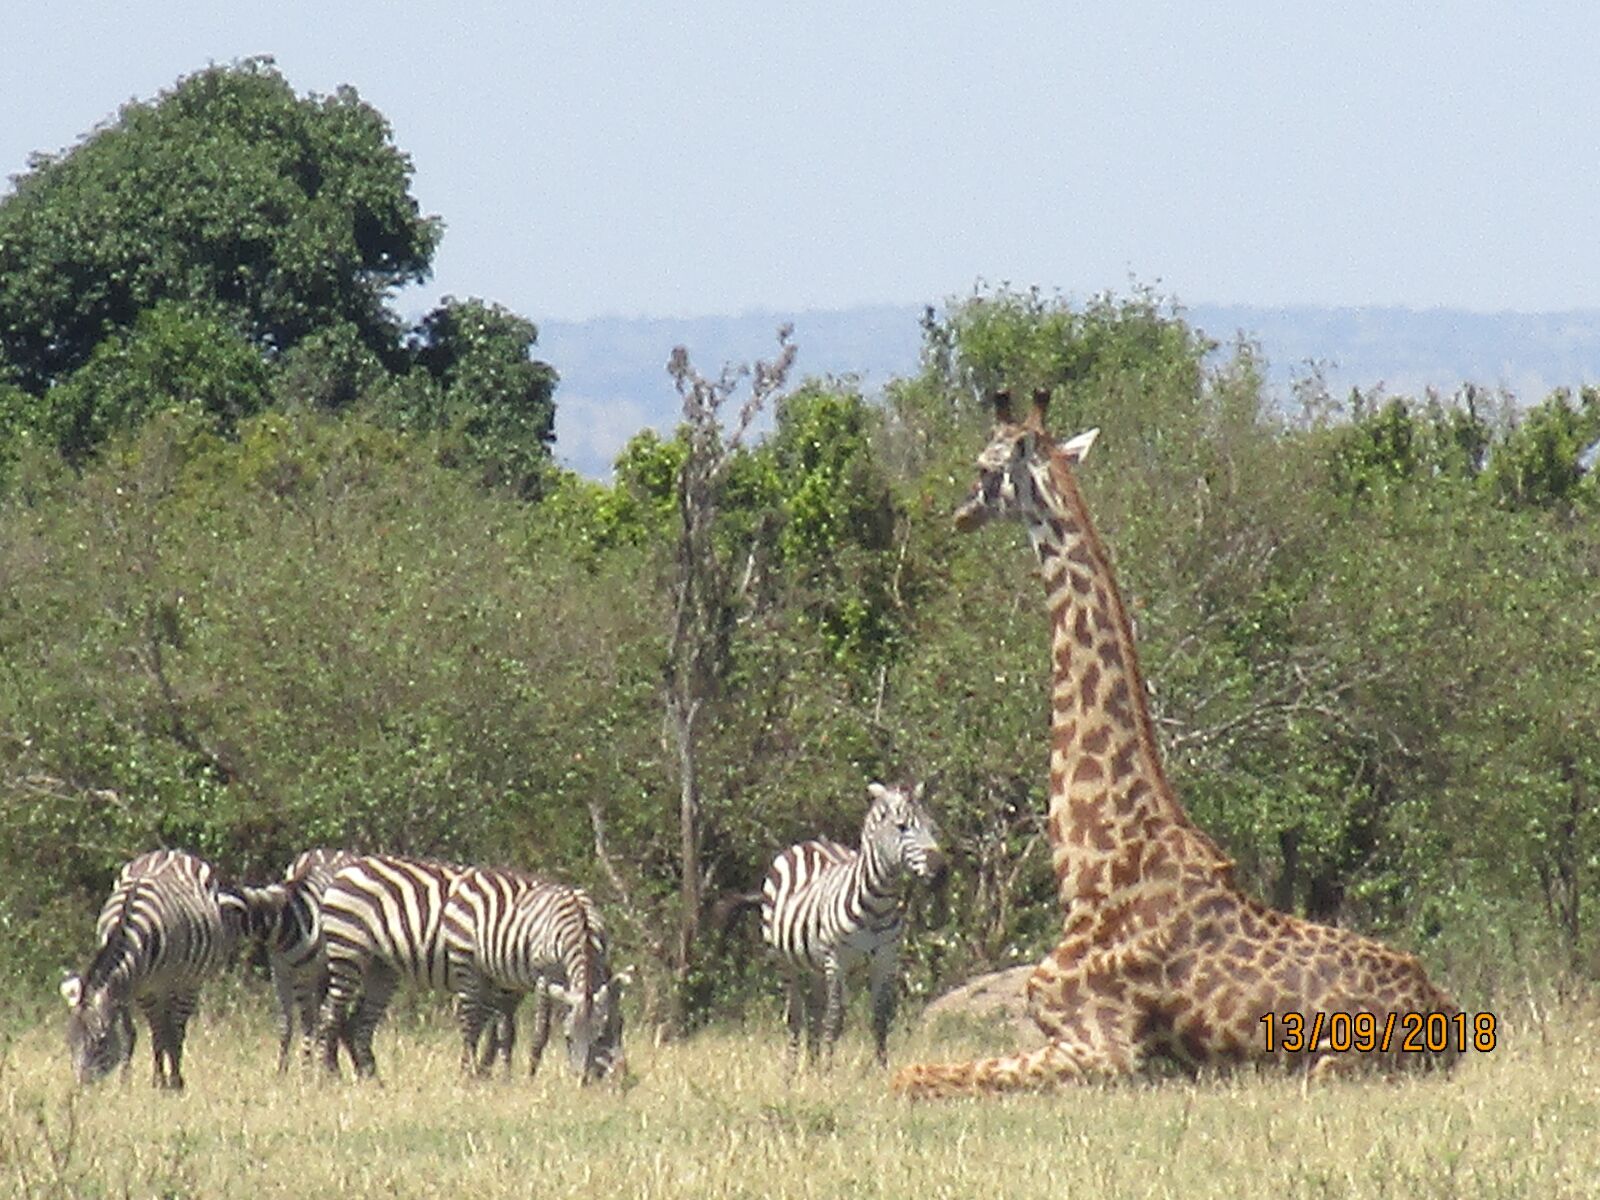 Canon IXUS 190 sample photo. Zebra, giraffe, nature photography